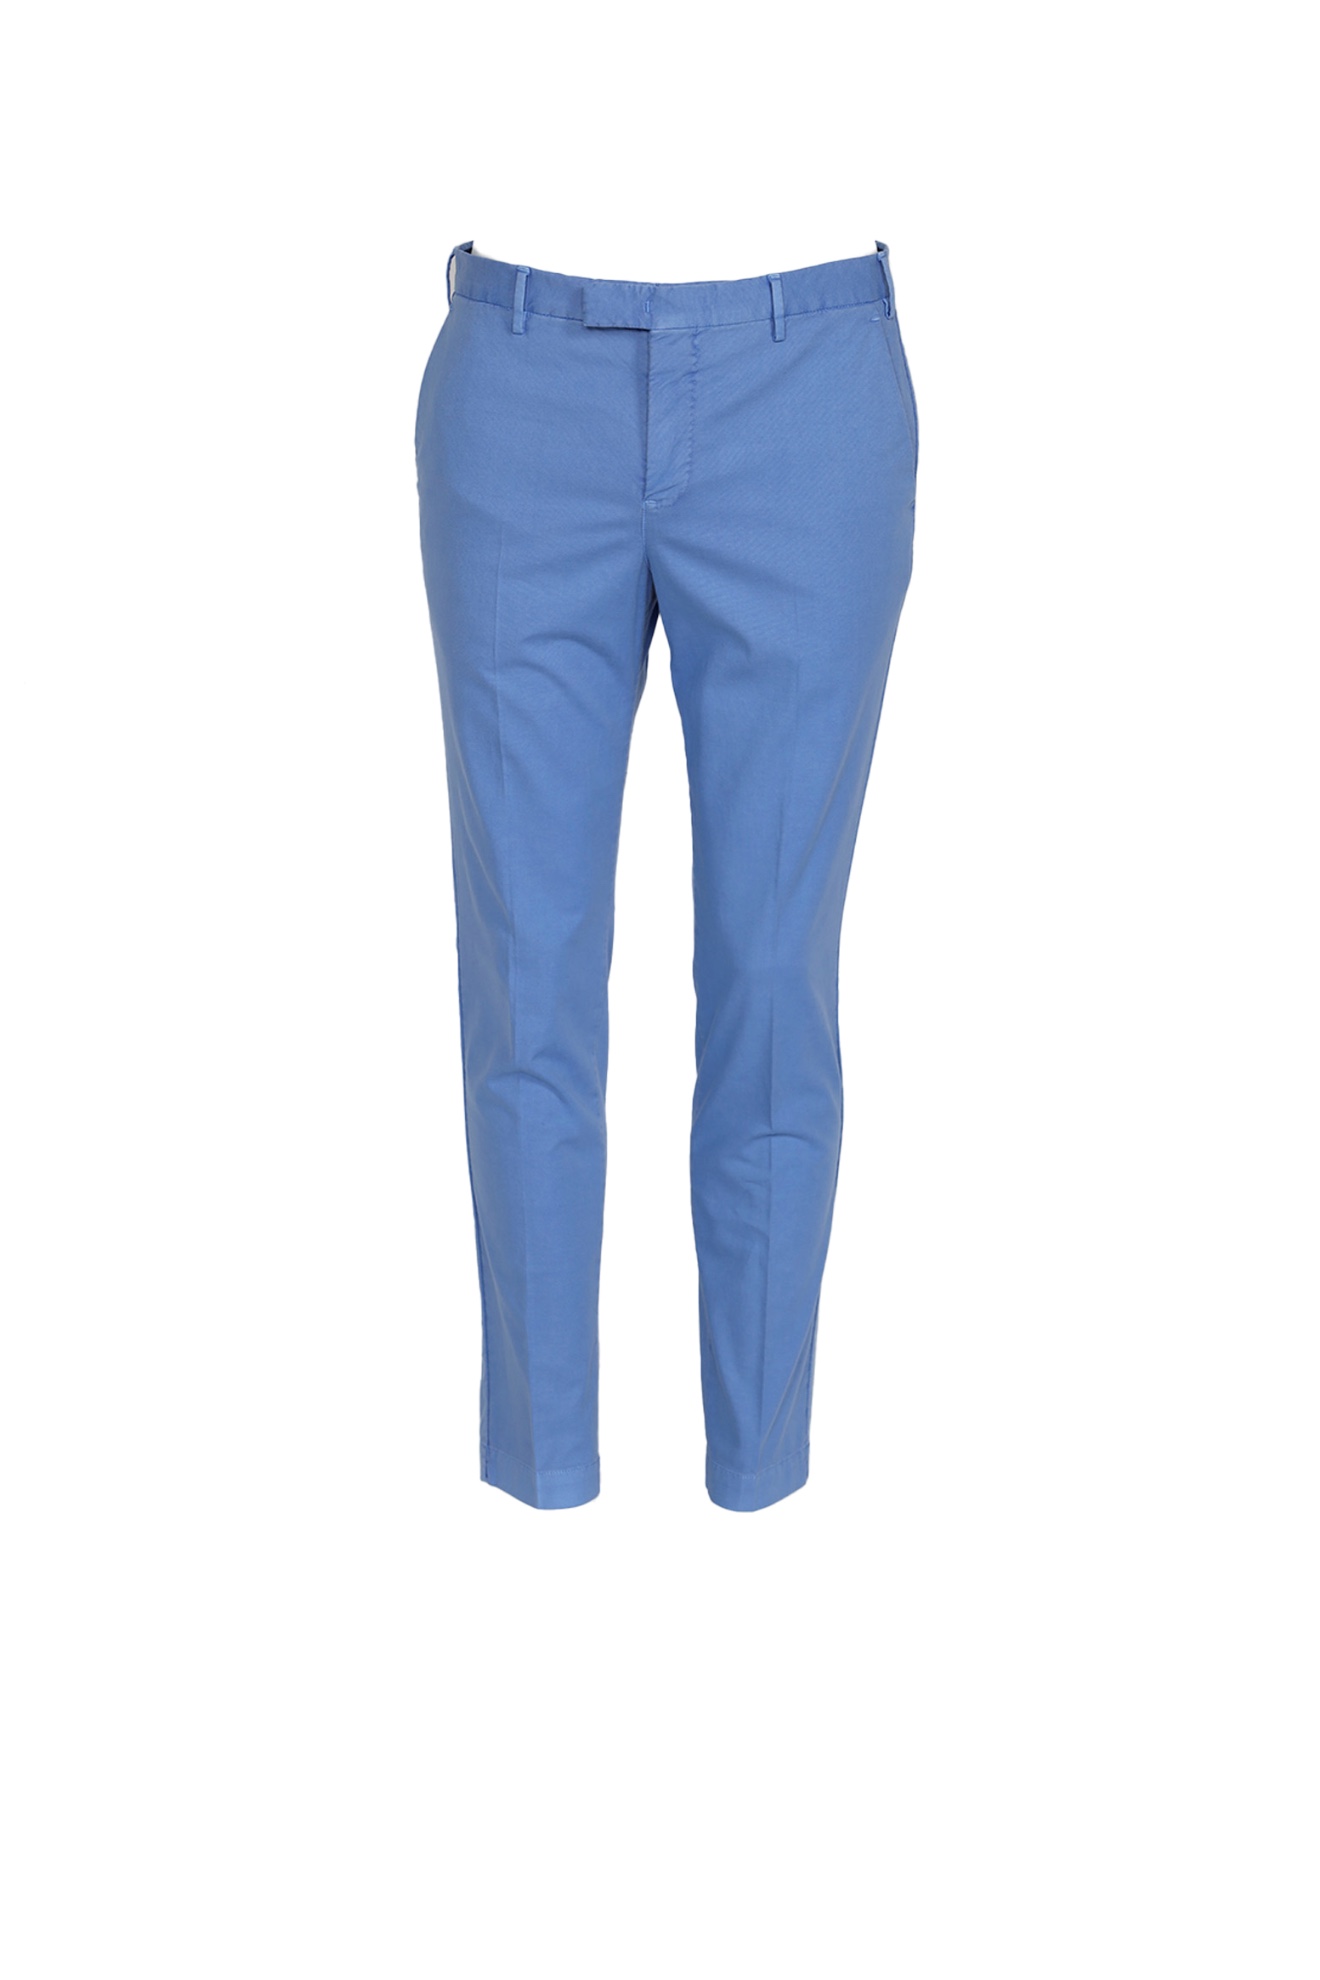 PT Torino Pantalon style chino avec pli en coton blau 48